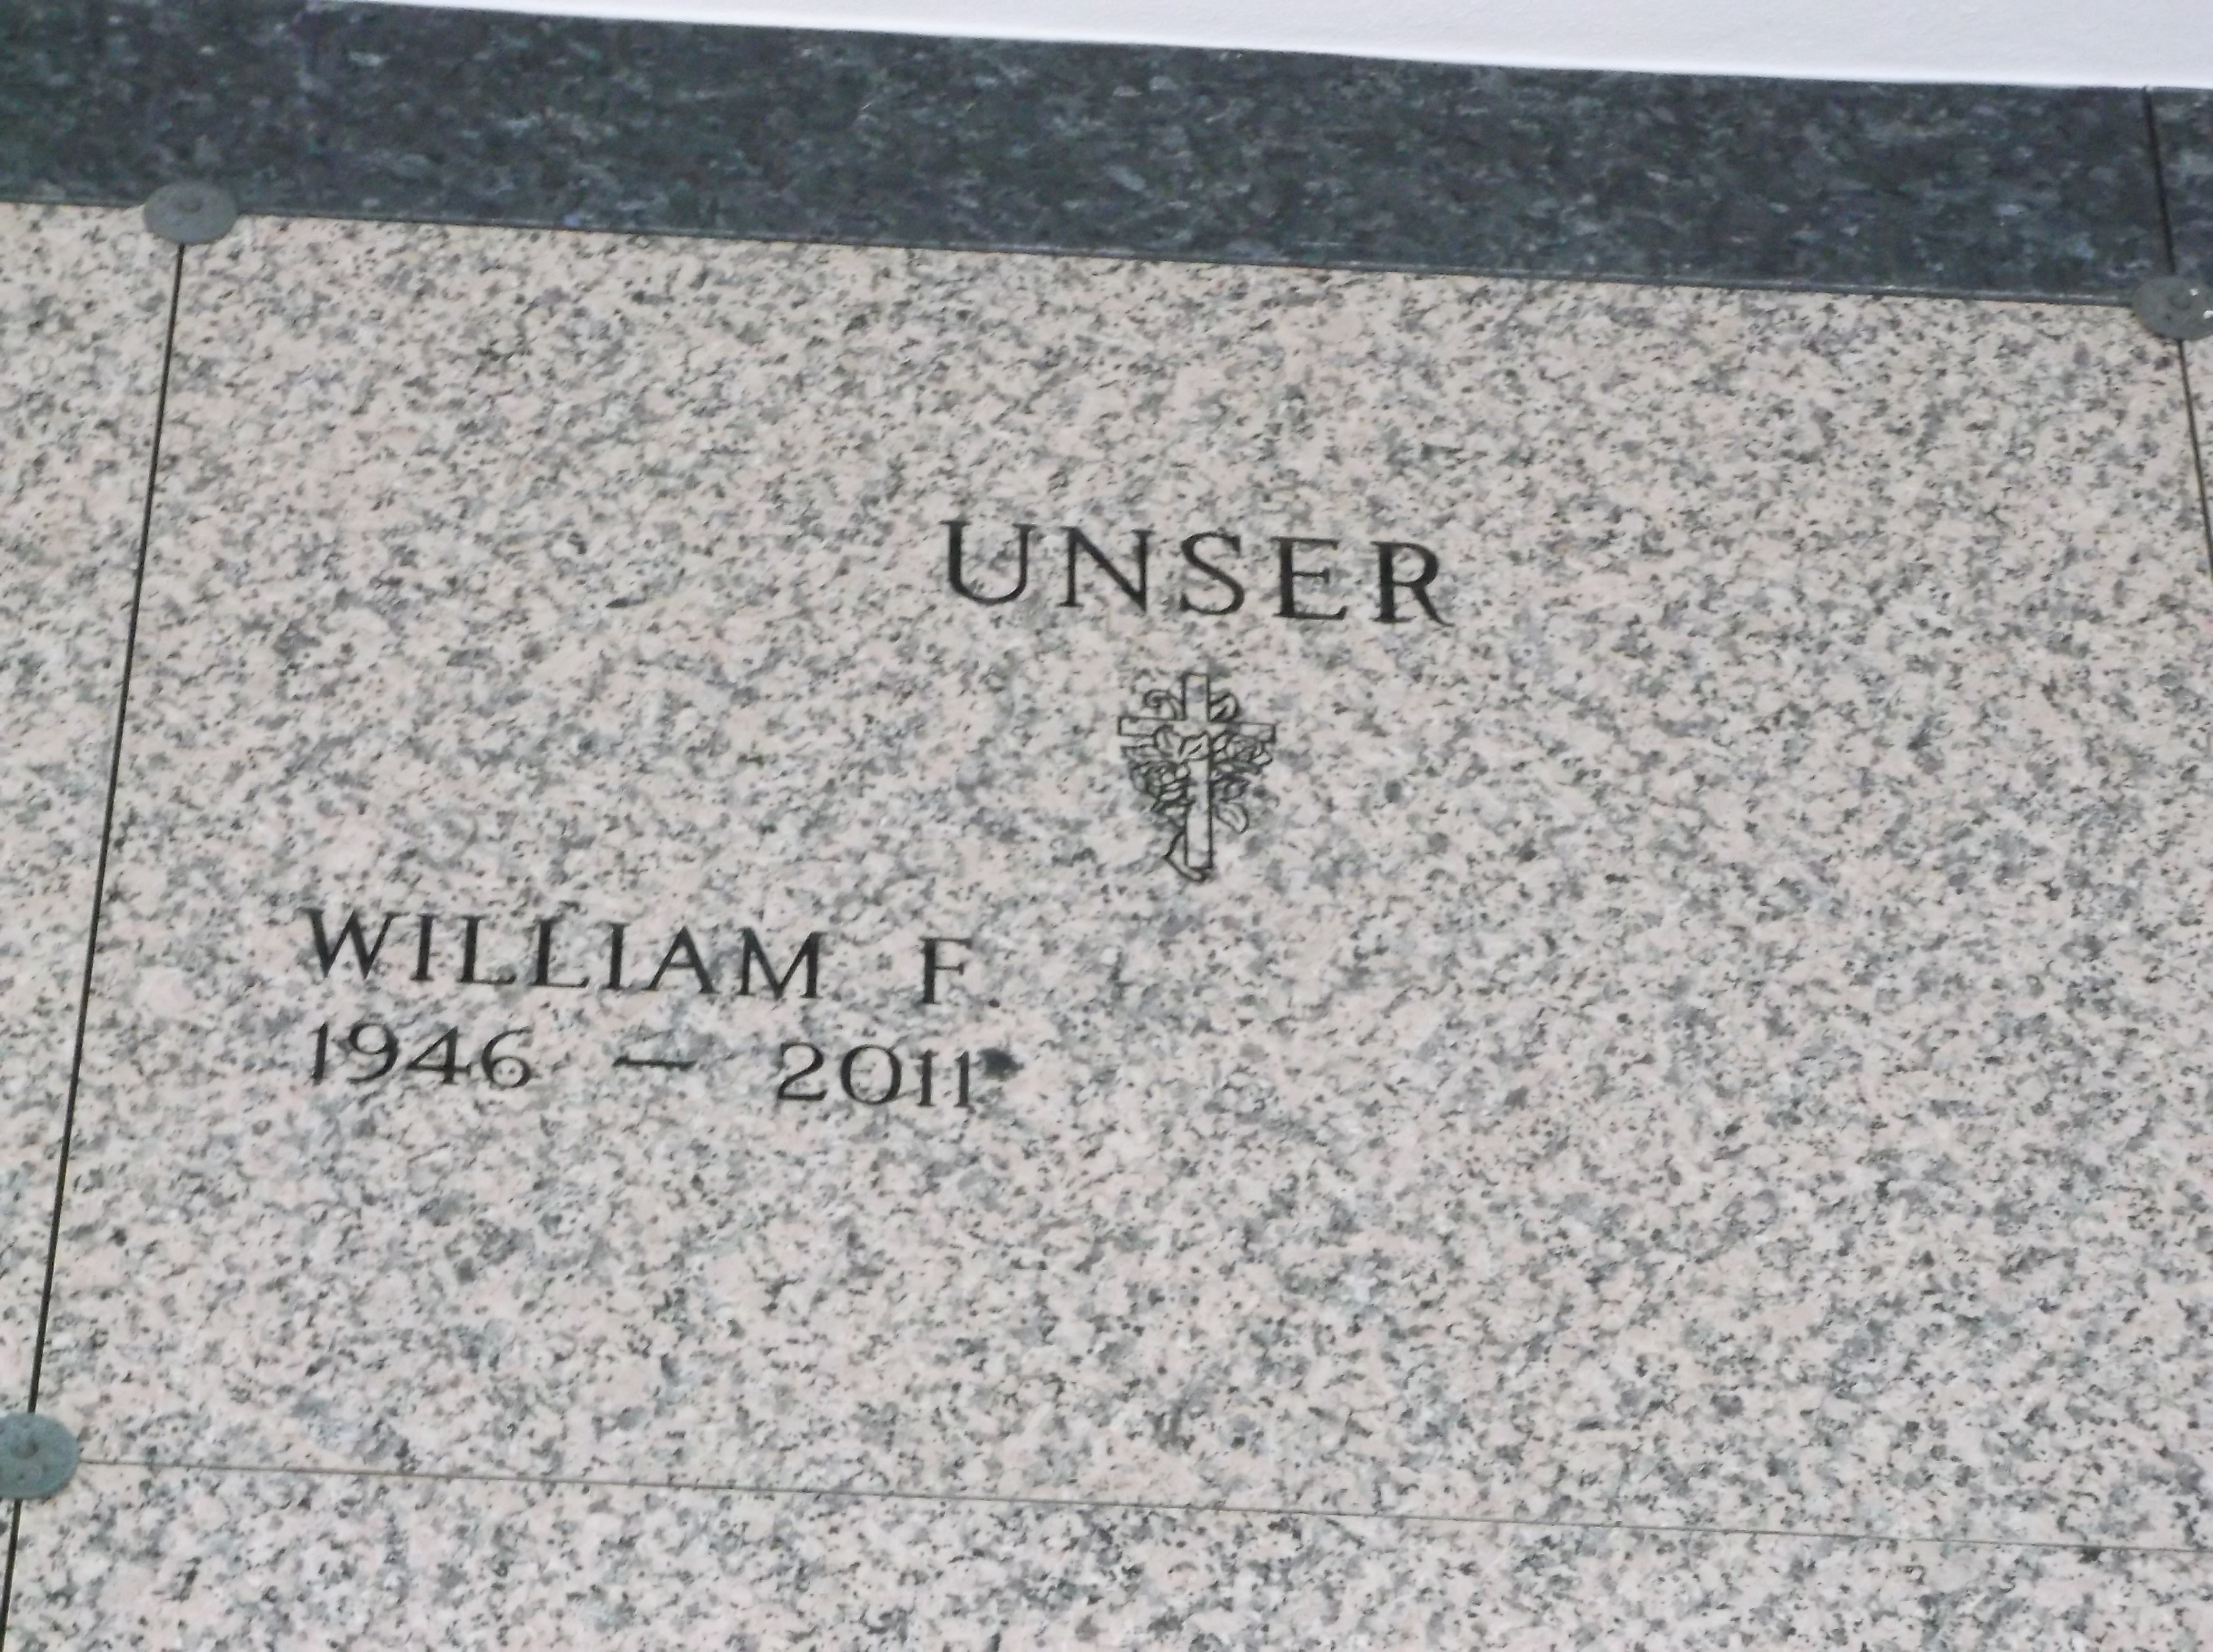 William F Unser